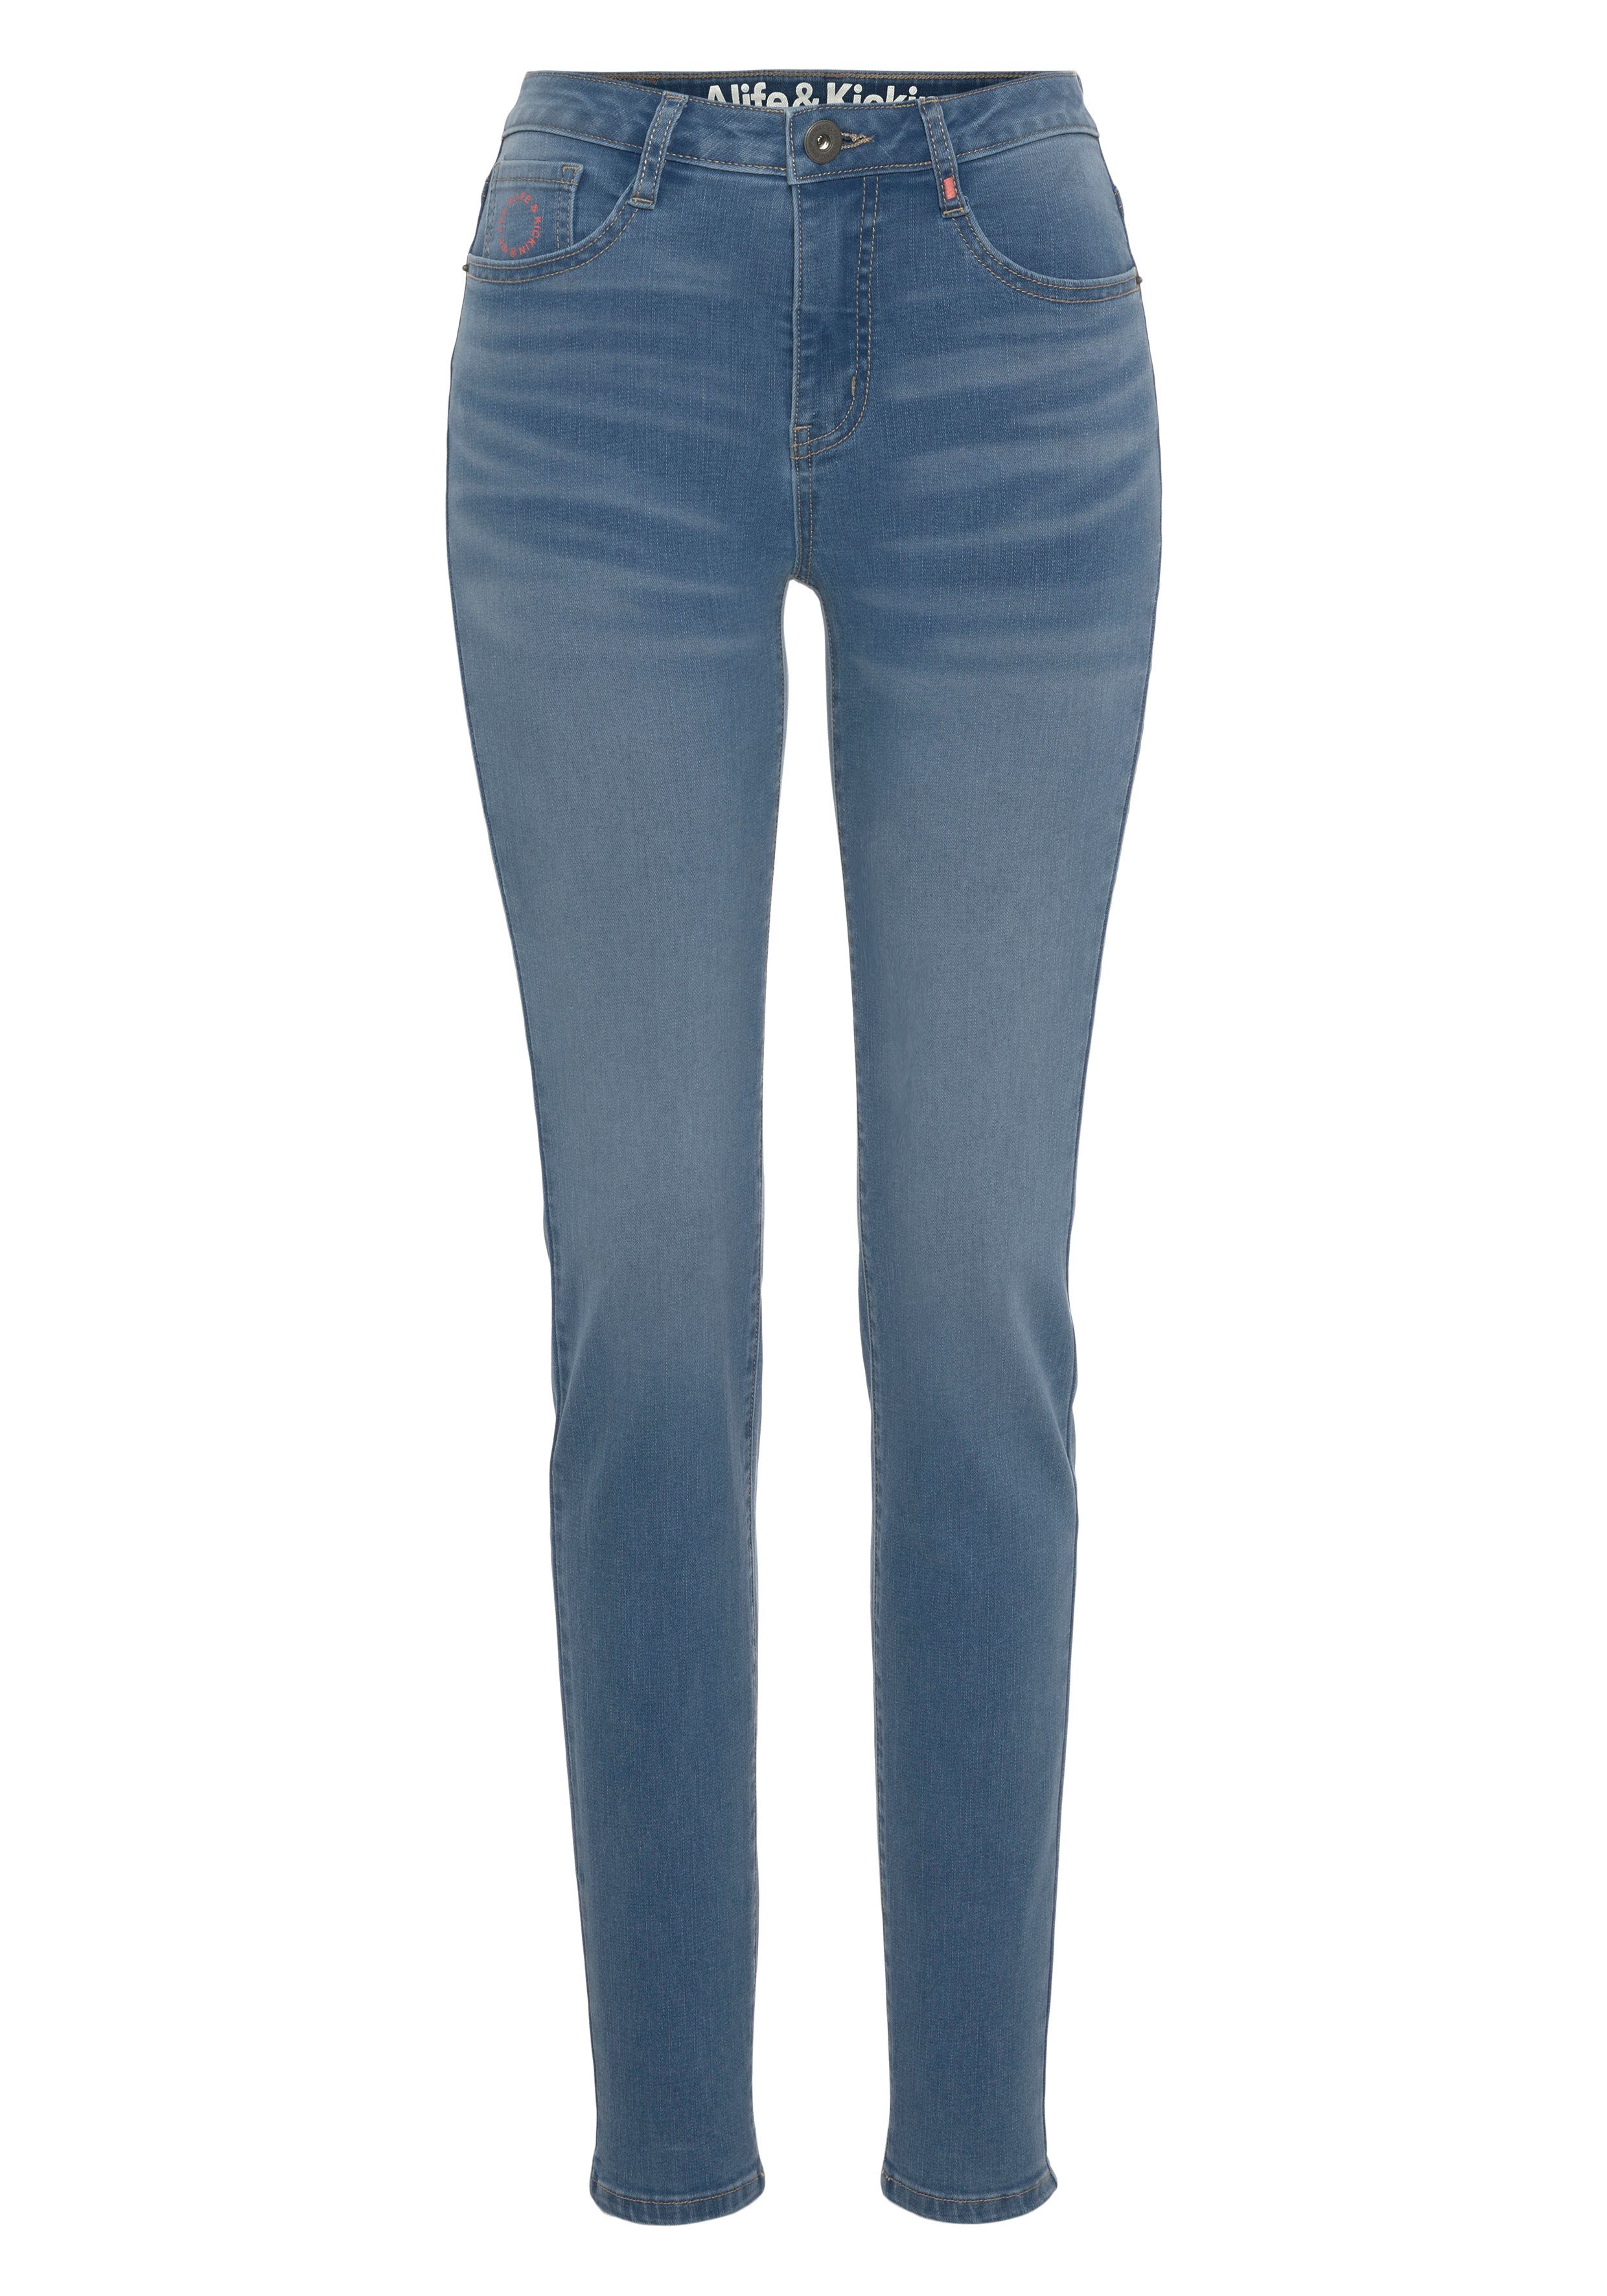 NEUE & KOLLEKTION blue Slim-Fit High-waist-Jeans Kickin NolaAK used Alife